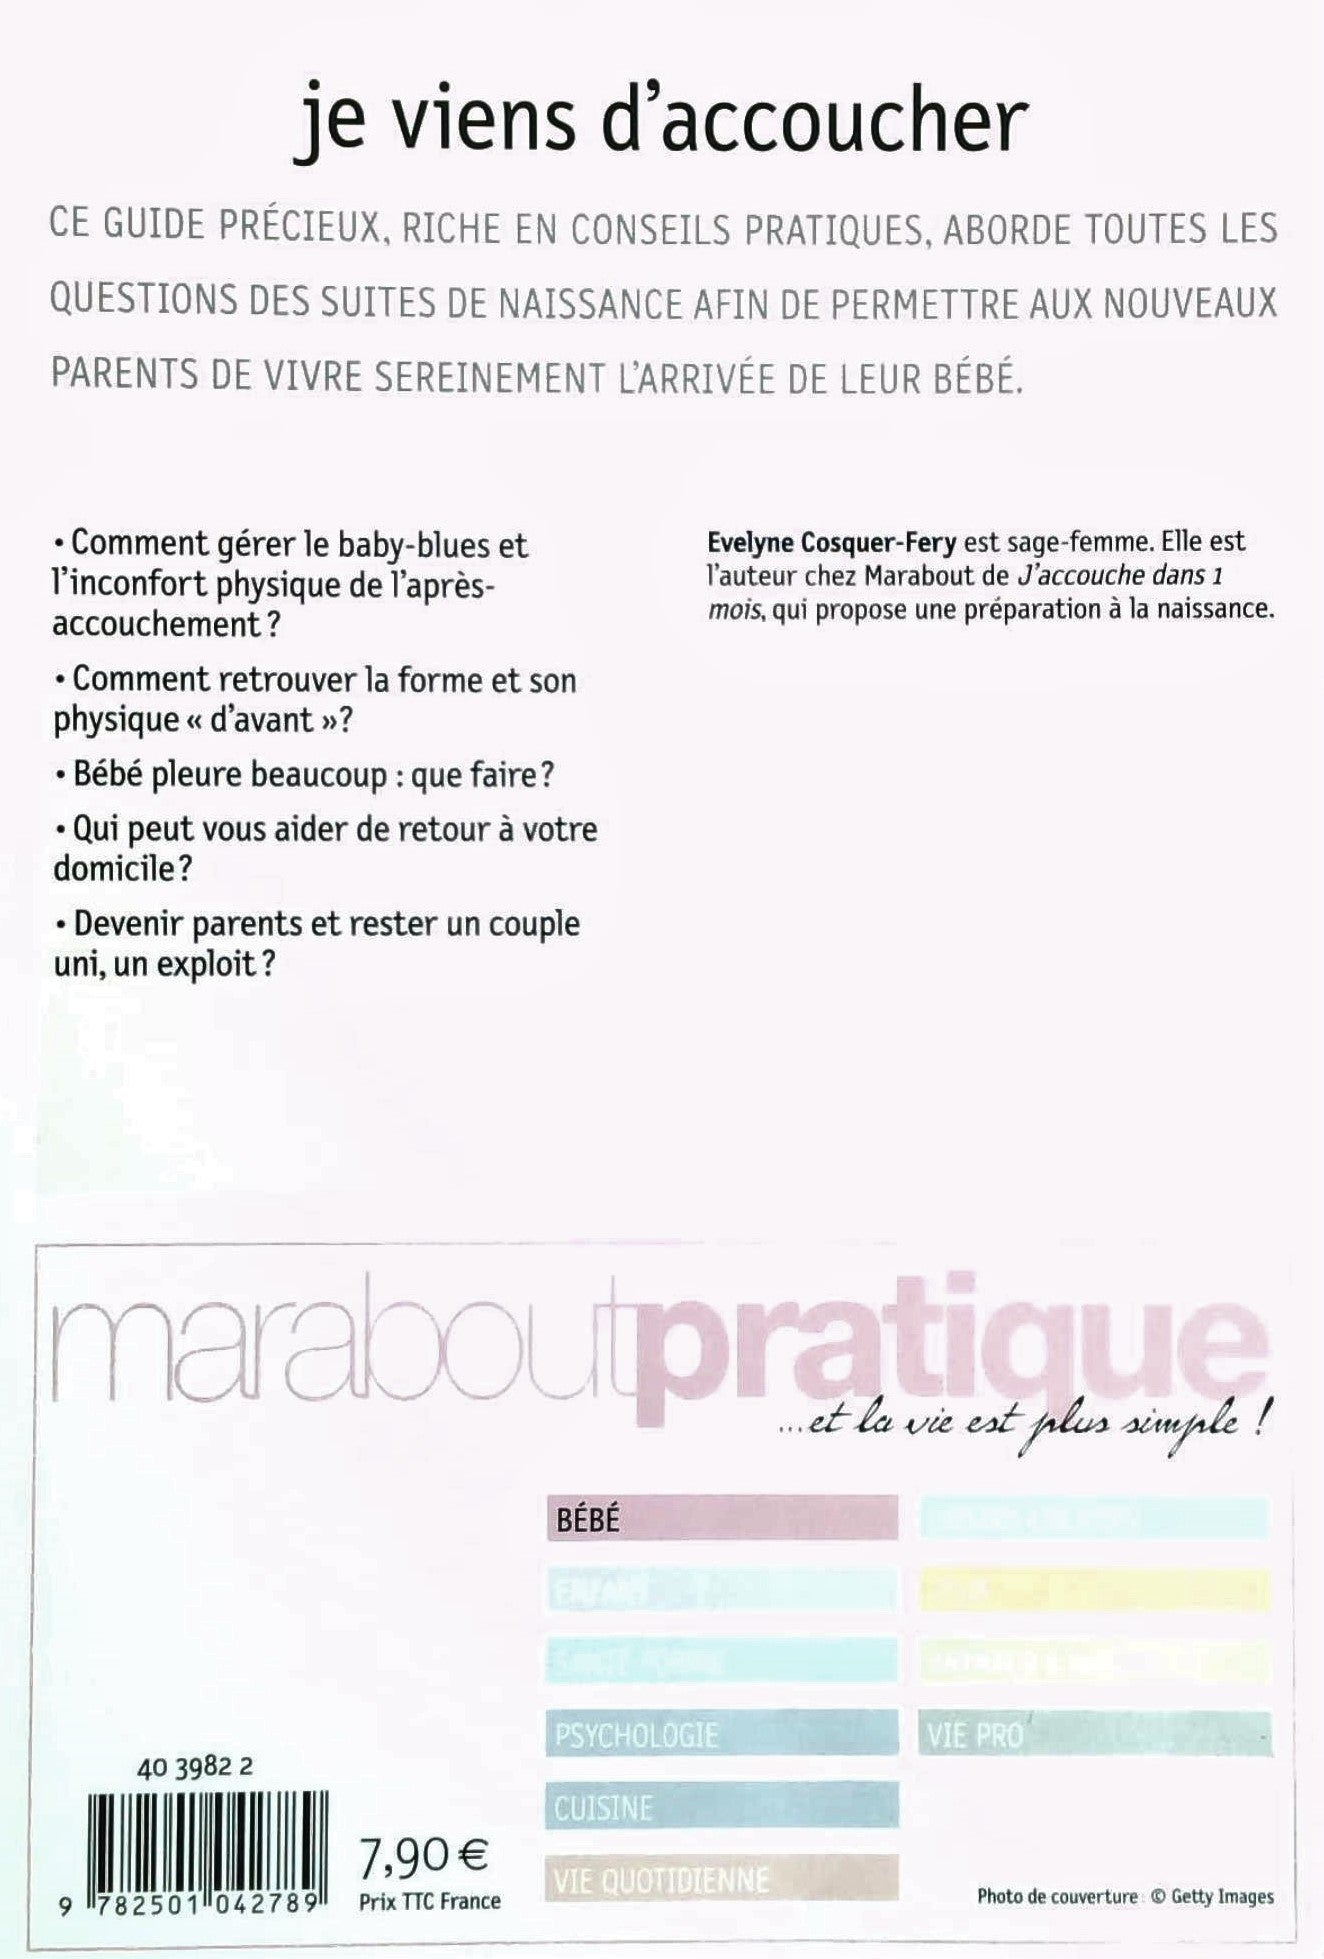 Marabout pratique : Je viens d'accoucher : Le guide pratique des suites de naissance (Évelyne Cosquer-Fery)